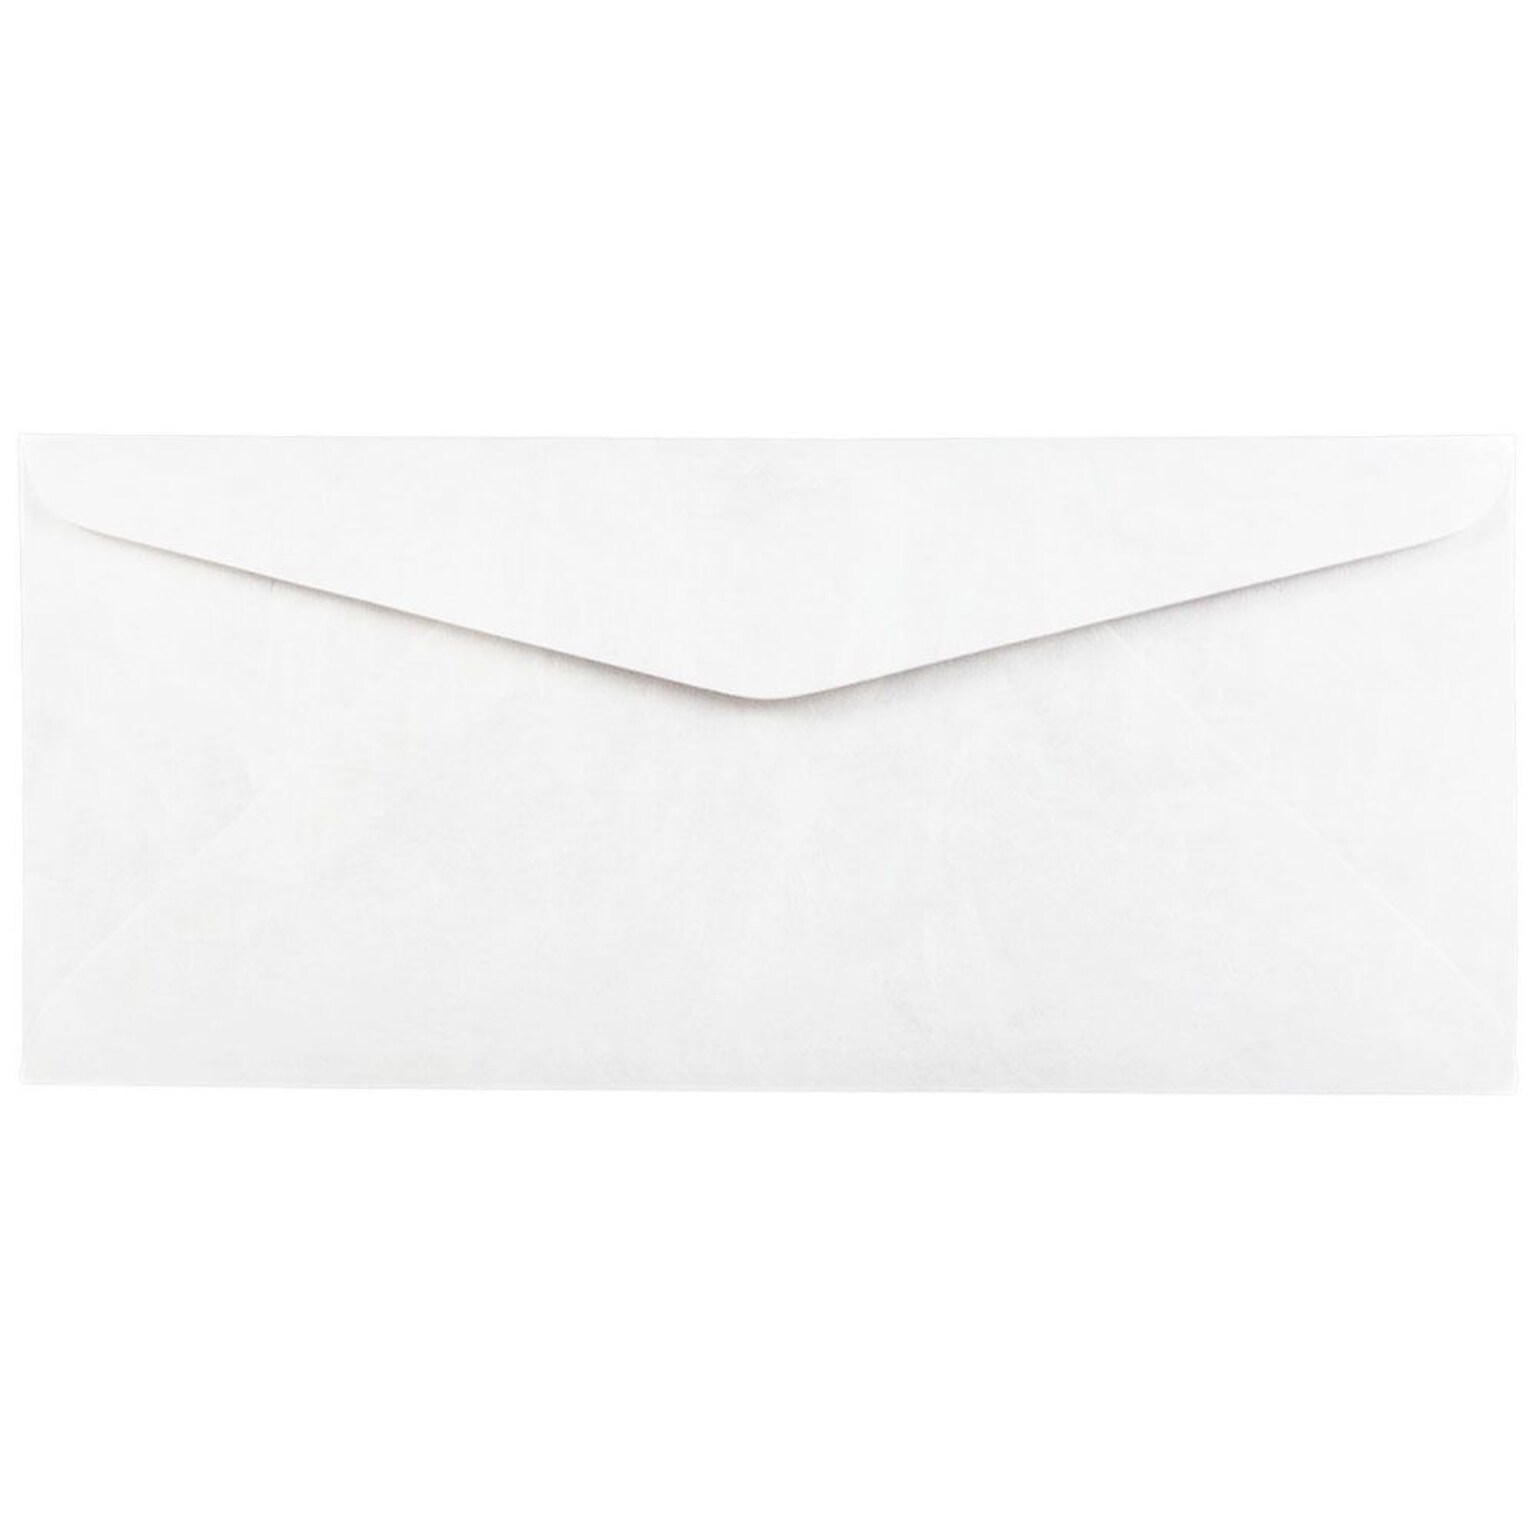 JAM Paper #10 Tyvek Business Envelope, 4 1/8 x 9 1/2, White, 25/Pack (2131077)